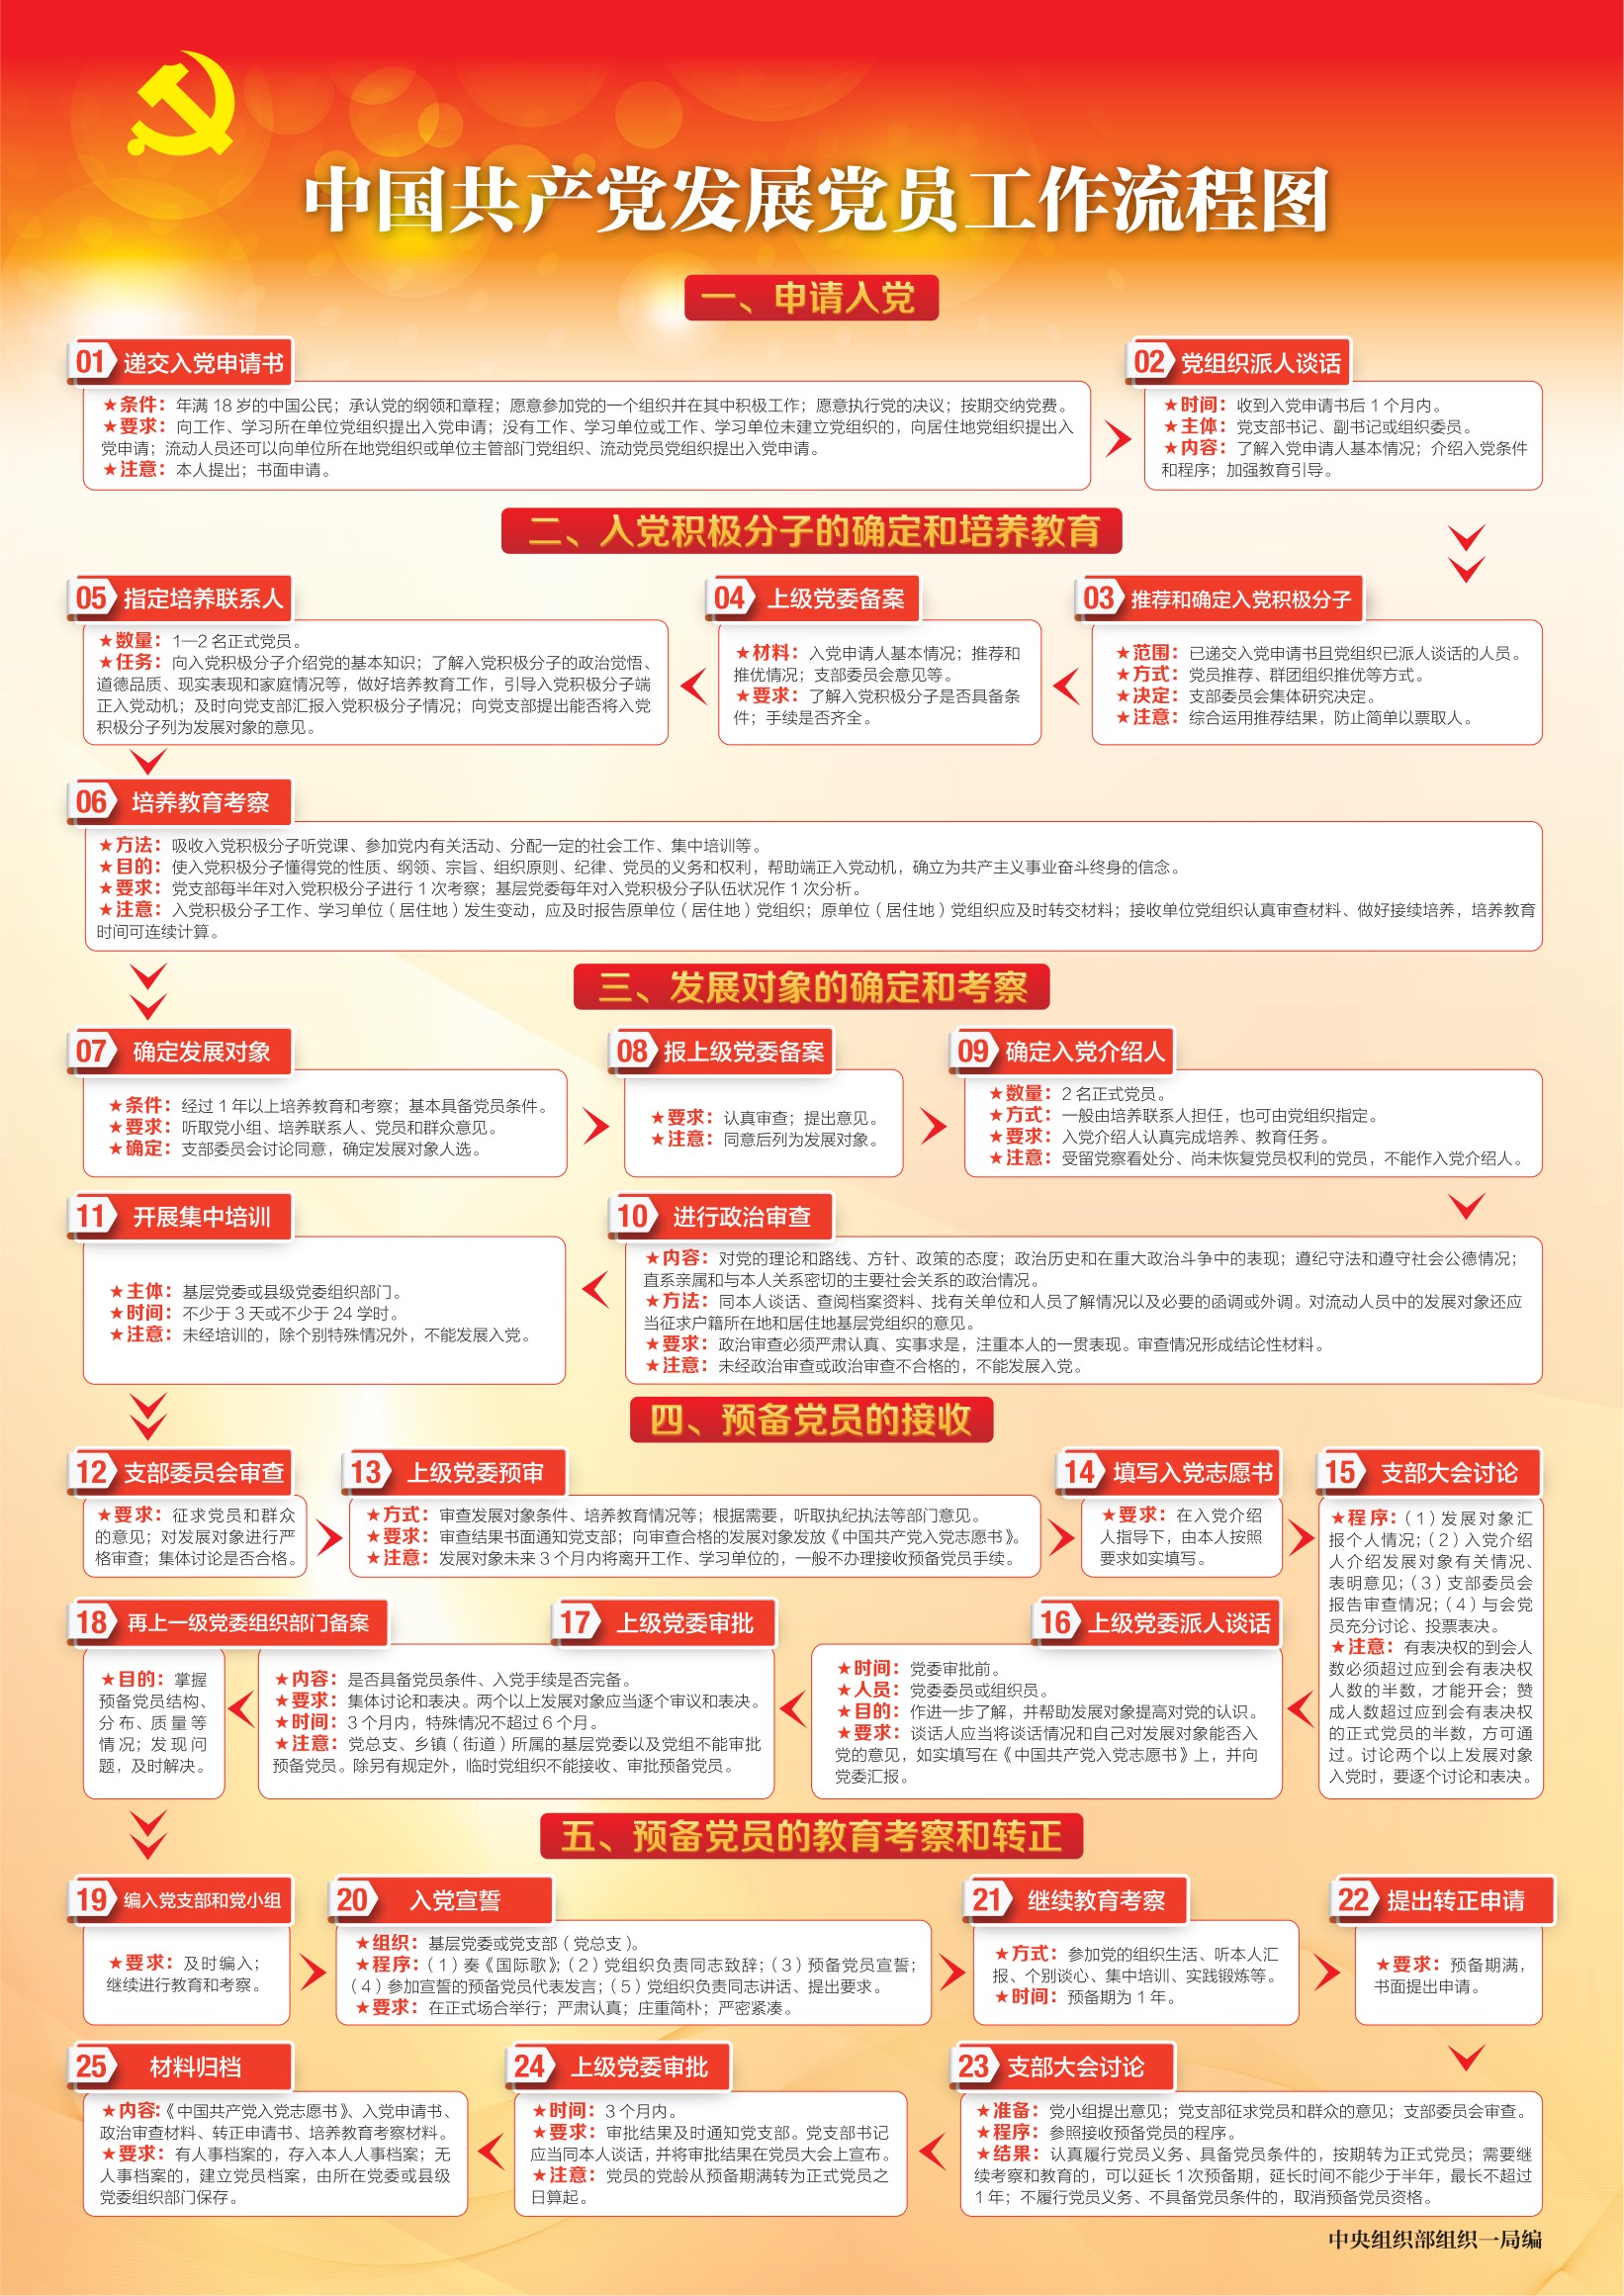 中国共产党发展党员工作流程图(1).jpg